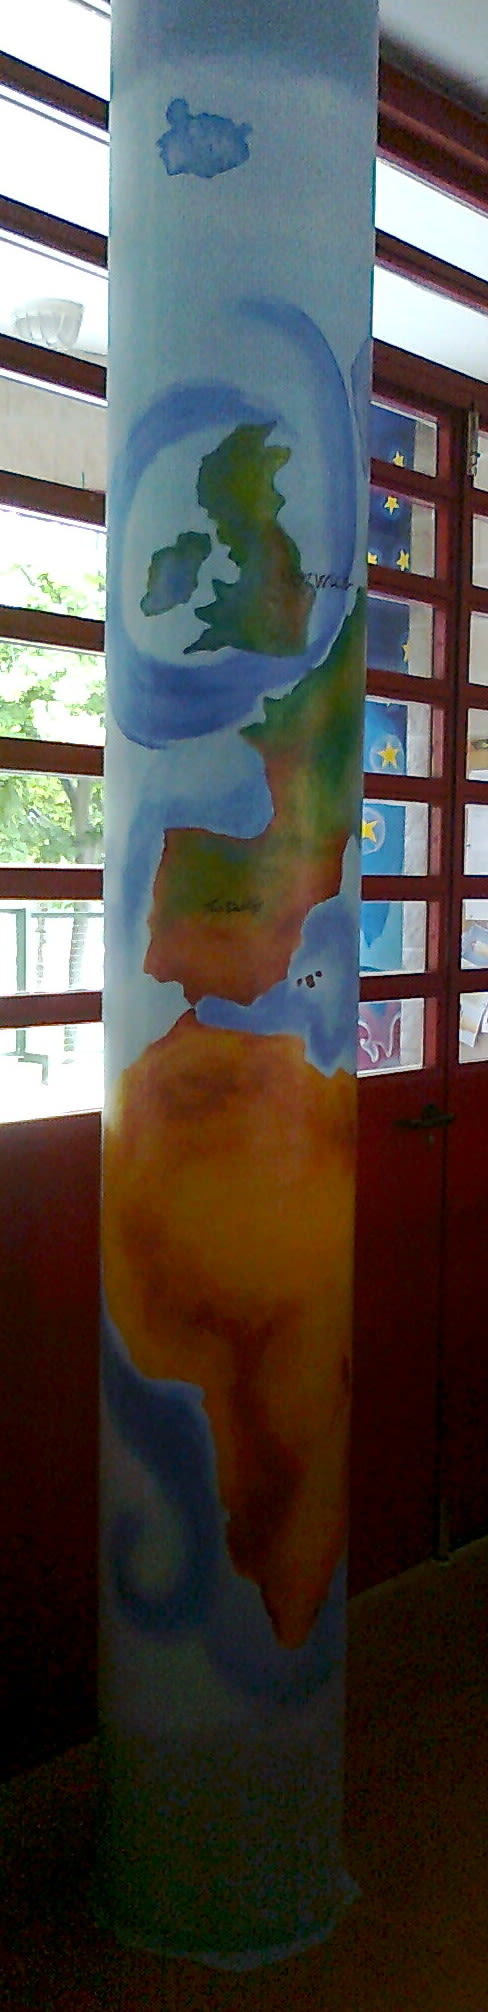 Pintura Mural en el colegio "Antonio Osuna"Tres Cantos 2011 43